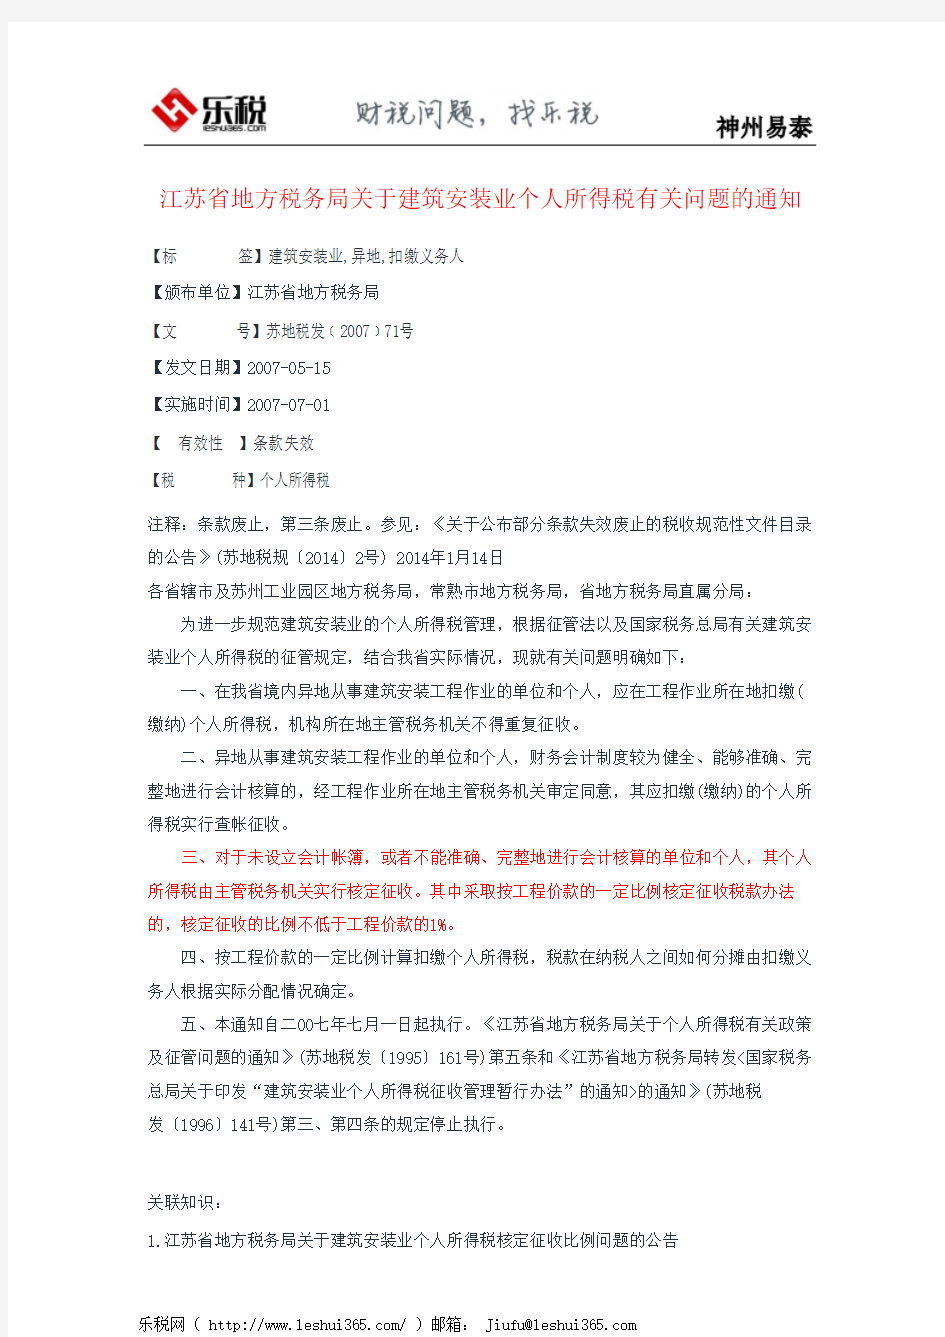 江苏省地方税务局关于建筑安装业个人所得税有关问题的通知